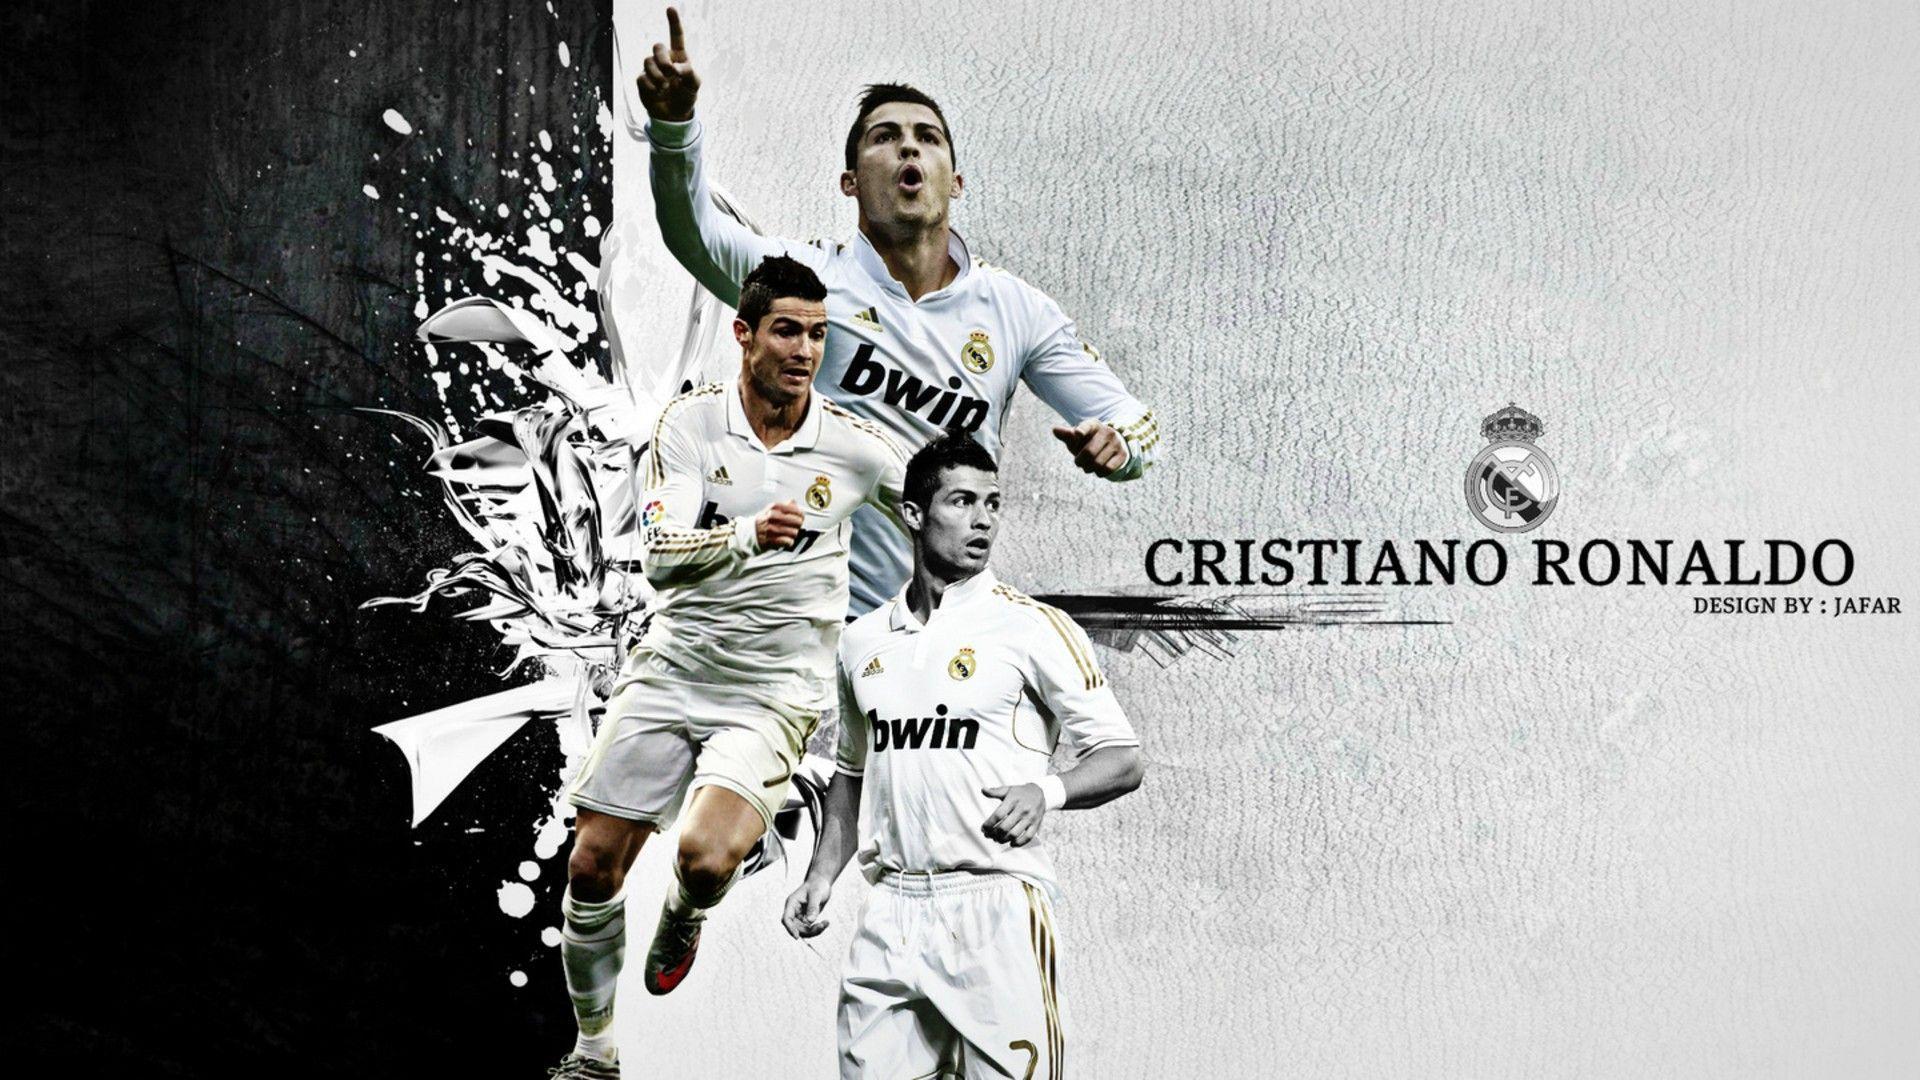 sports, soccer, Real Madrid, Cristiano Ronaldo, football stars